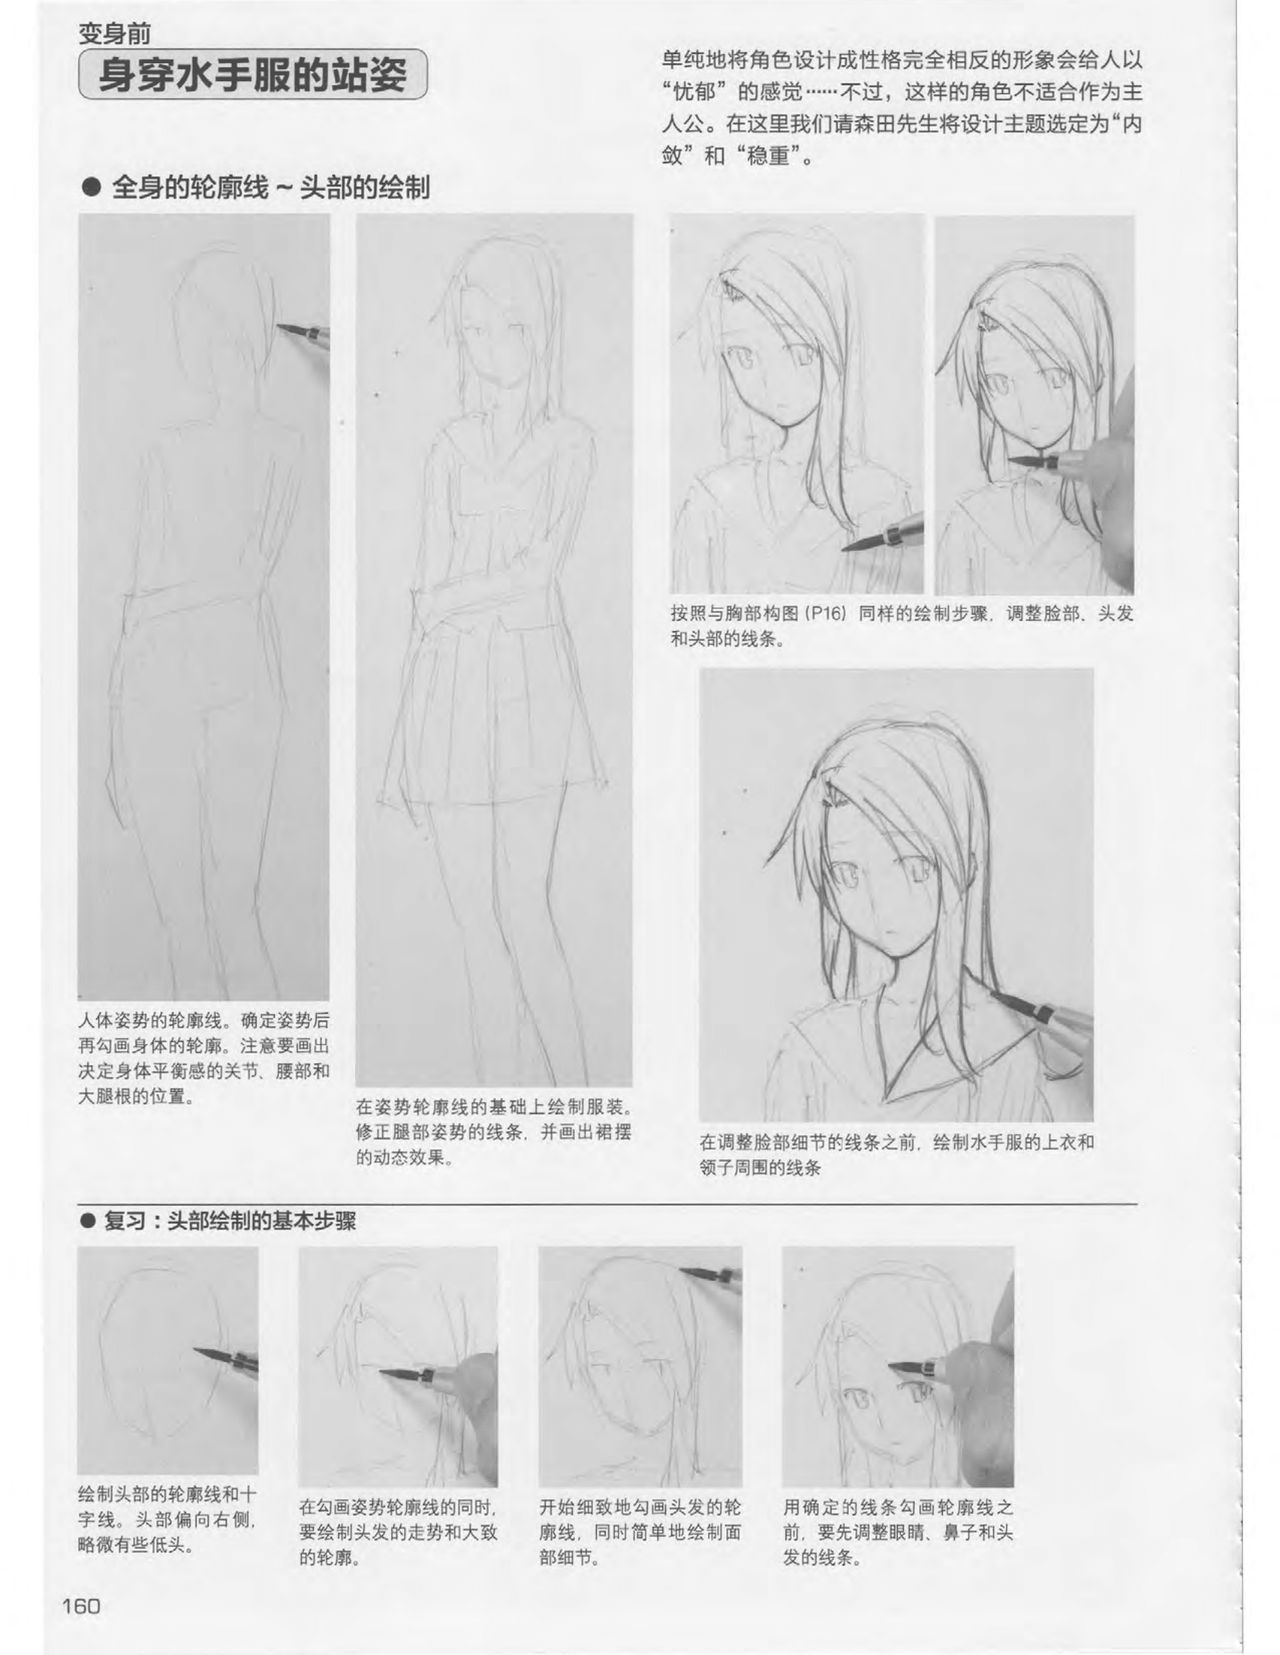 Japanese Manga Master Lecture 3: Lin Akira and Kakumaru Maru Talk About Glamorous Character Modeling 159